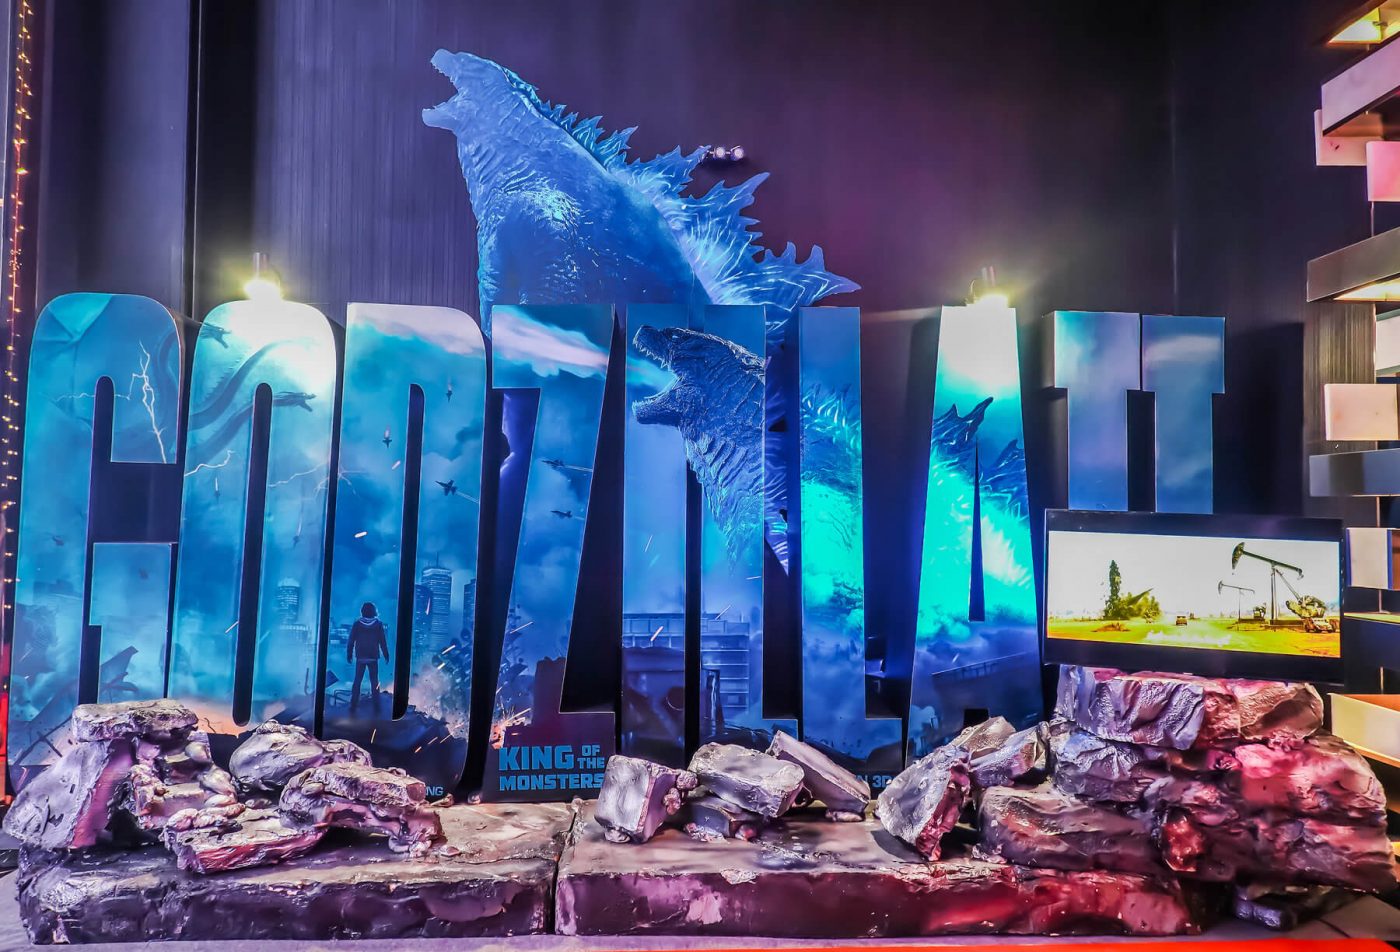 6 settembre 2021: Stasera in tv, Godzilla II su Italia 1: le 15 curiosità sul film che non sapevi